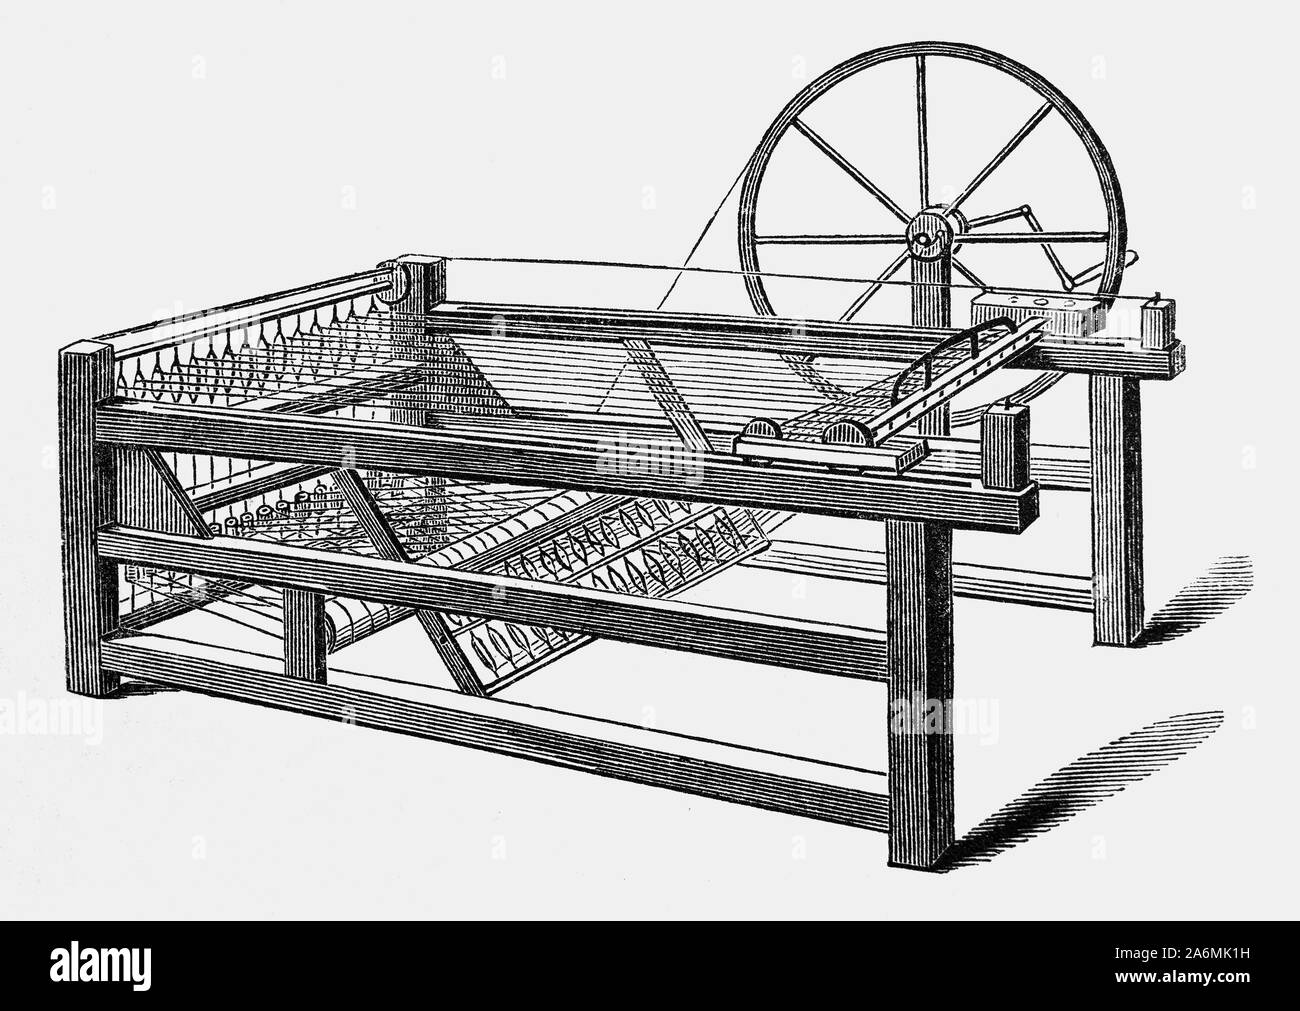 La filatura jenny è un multi-mandrino filatoio, inventato nel 1764 da James Hargreaves in Lancashire, Inghilterra. È stato uno dei principali sviluppi nell'industrializzazione di tessitura durante la prima rivoluzione industriale. Il dispositivo ha ridotto la quantità di lavoro necessario per produrre un panno con un lavoratore in grado di lavorare otto o più bobine in una sola volta. Questo è cresciuto a 120 come tecnologia avanzata. Il filato prodotto non era molto forte fino a quando Richard Arkwright ha inventato l'acqua-acqua alimentato frame, che produceva filato più duro e più forte di quella della filatura iniziale jenny di avviare il sistema in fabbrica. Foto Stock